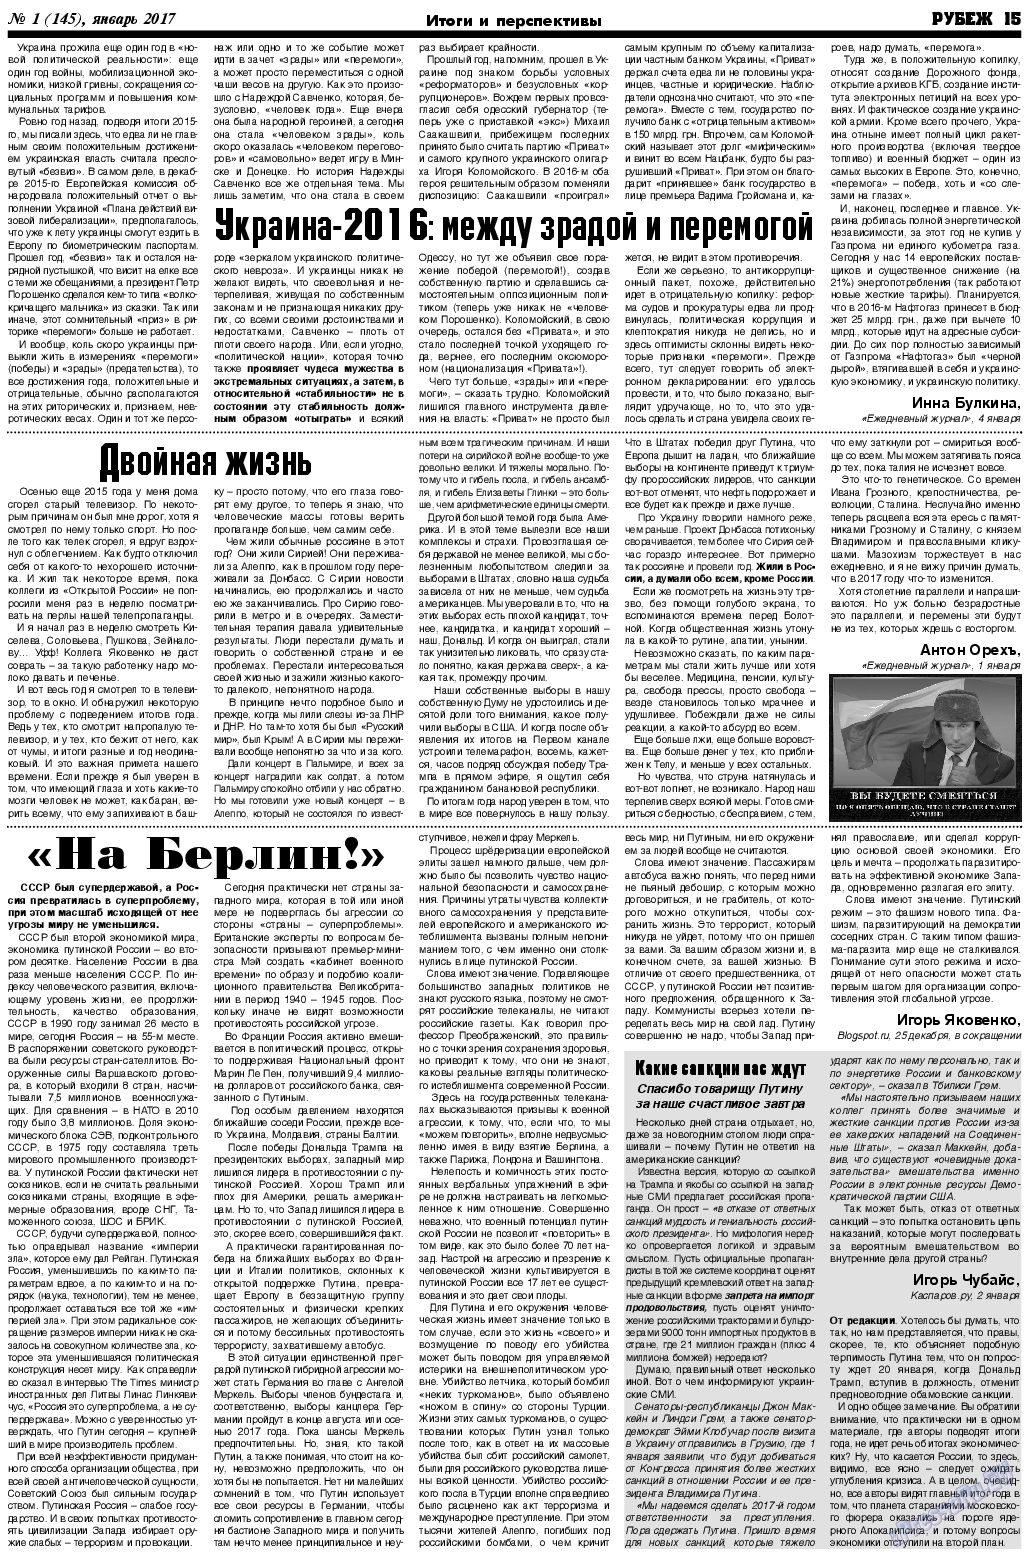 Рубеж (газета). 2017 год, номер 1, стр. 15